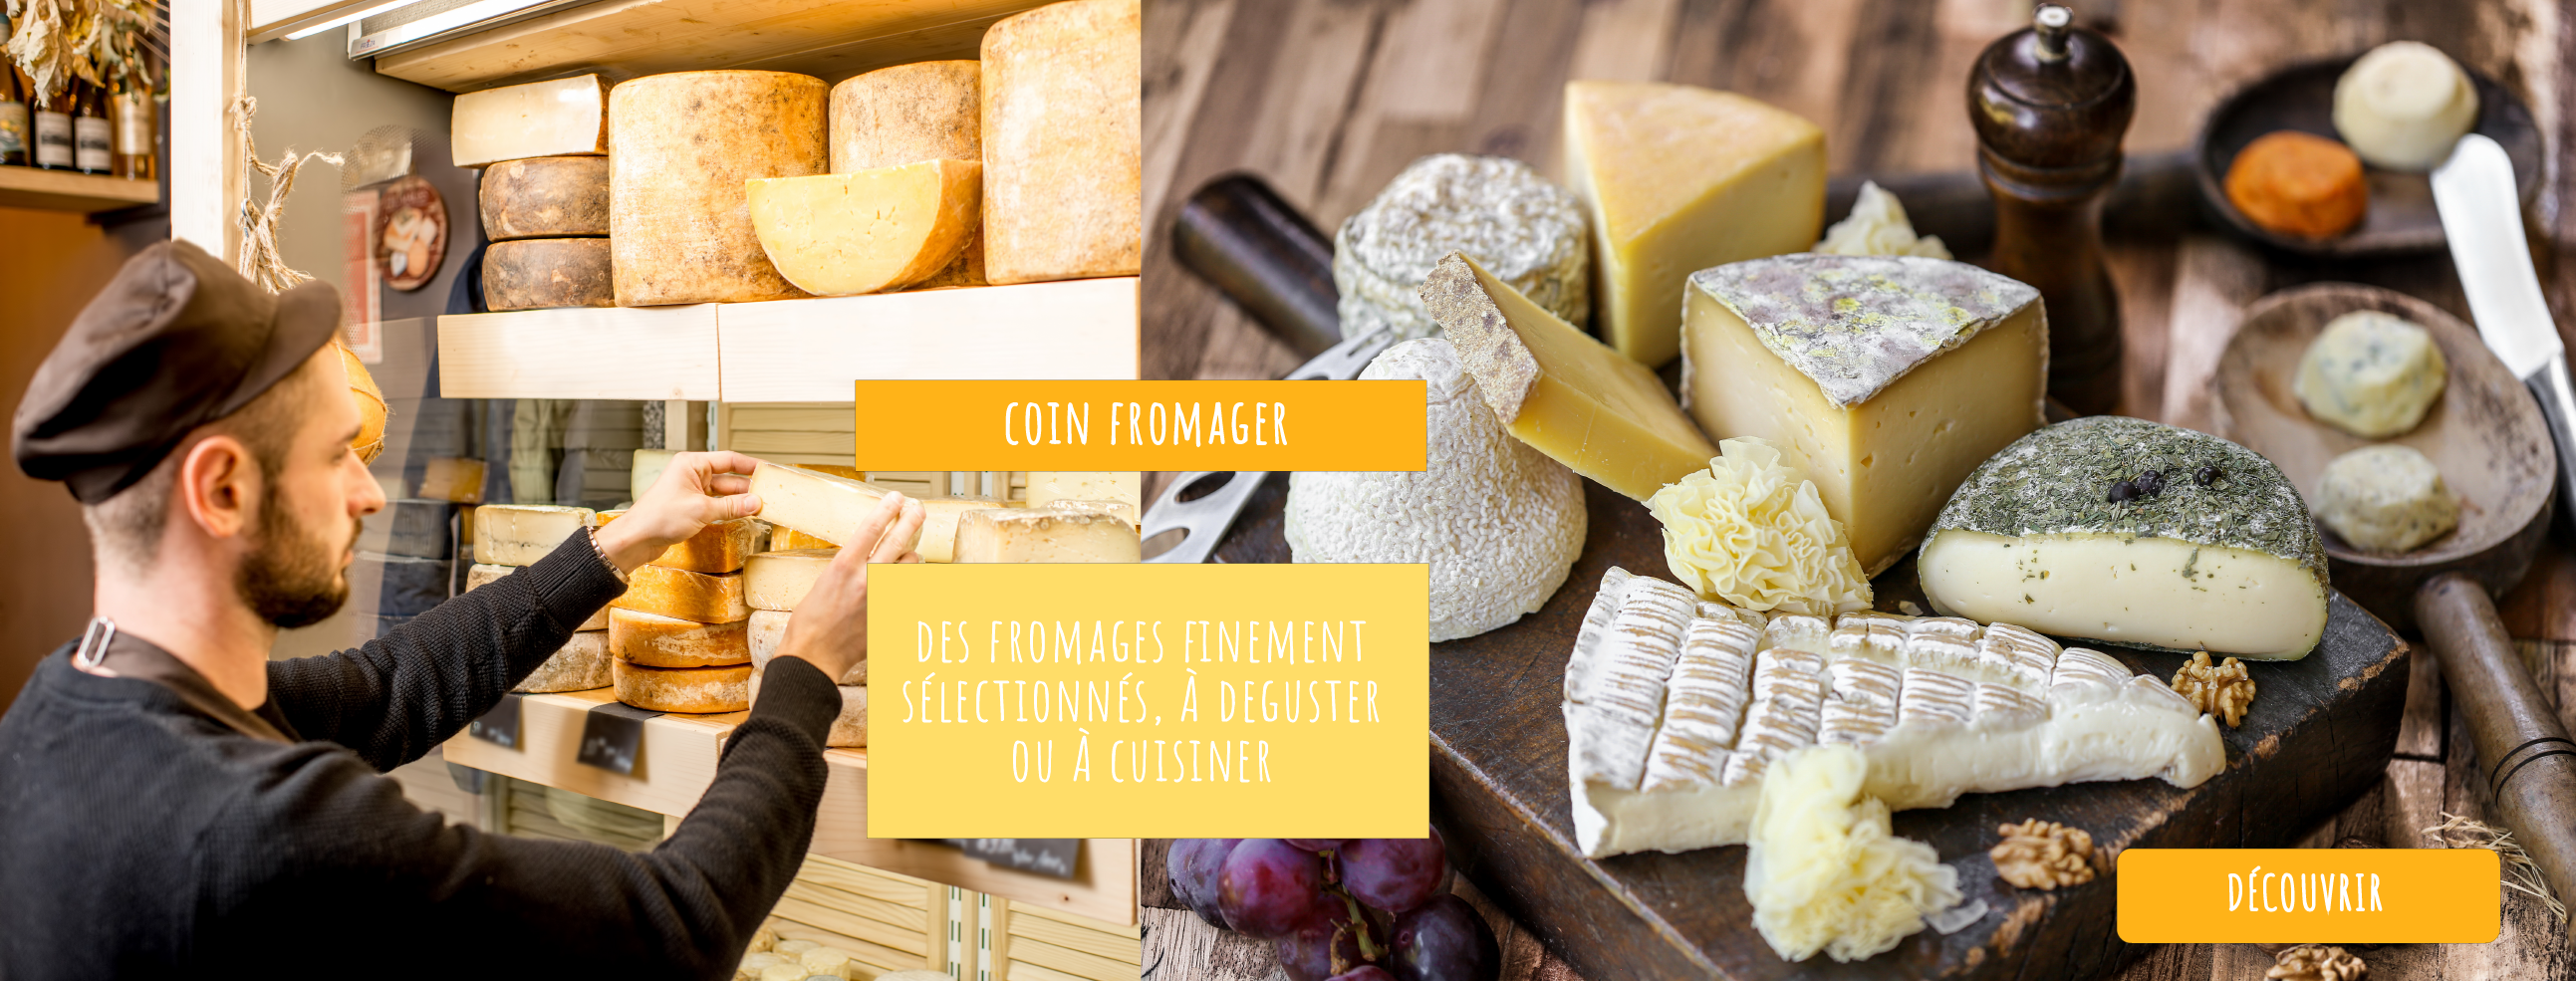 Notre sélection de savoureux fromages